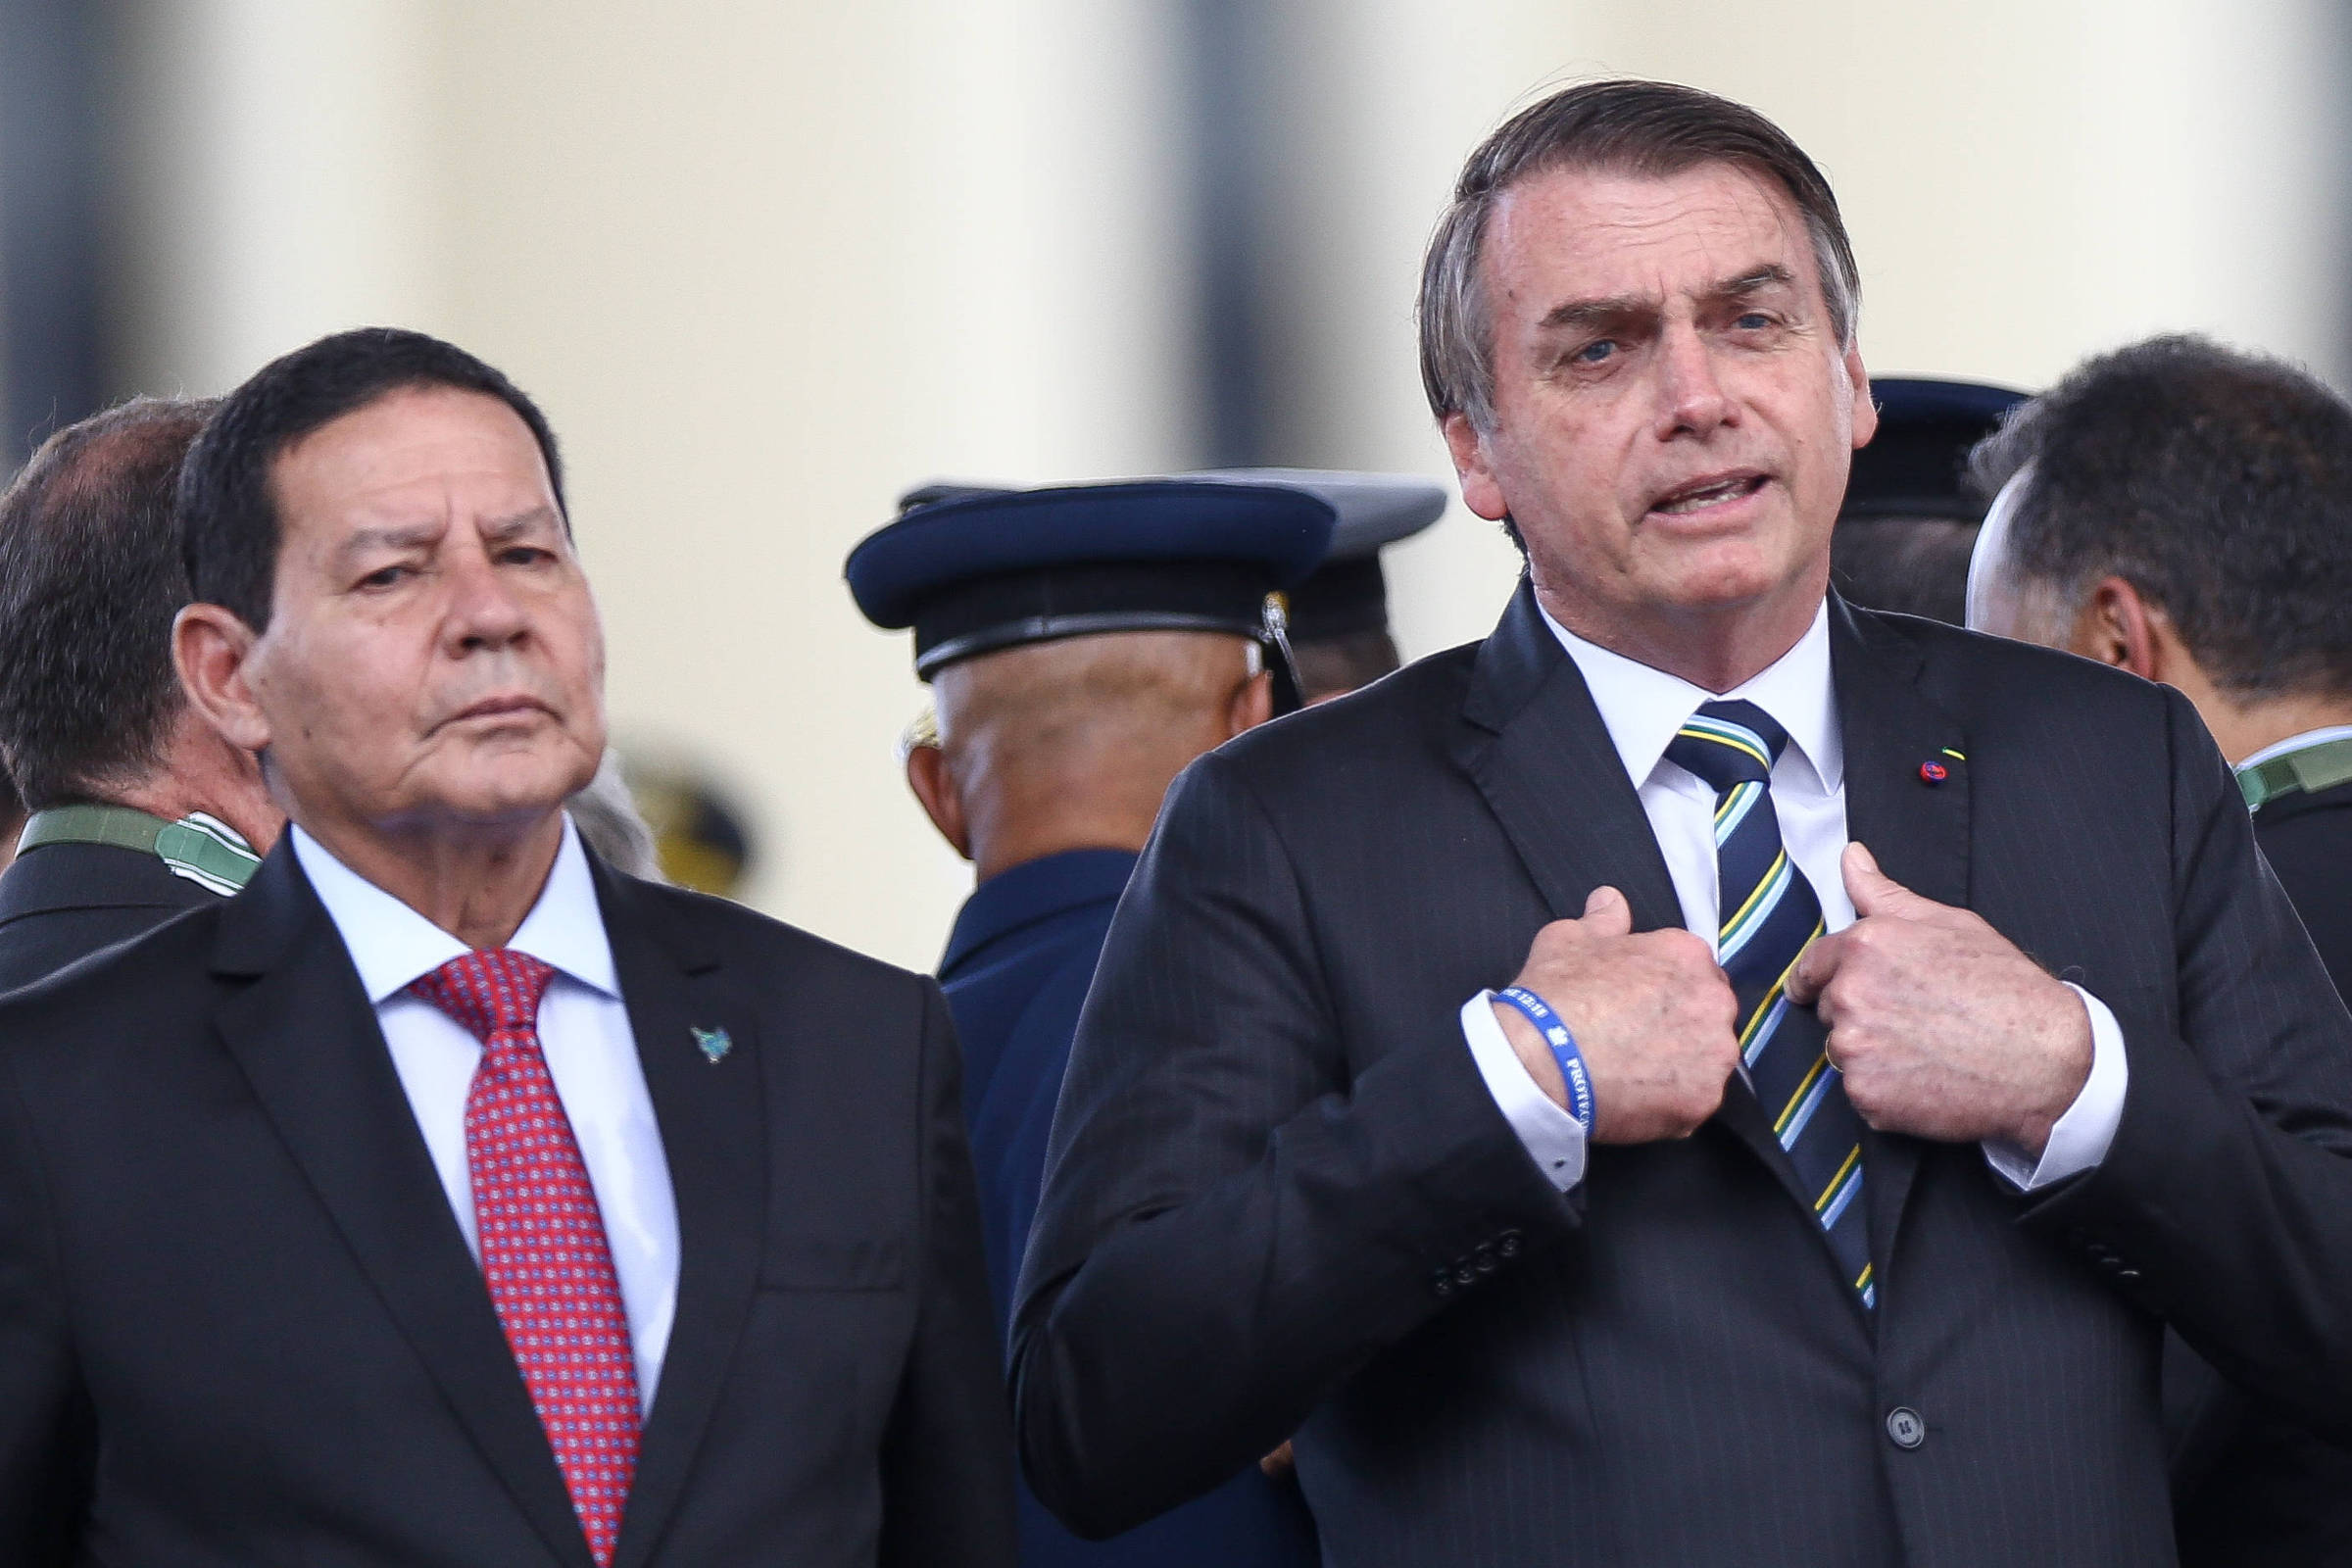 O presidente Jair Bolsonaro (PSL) e o vice, Hamilton Mourão, durante cerimônia de comemoração do Dia do Exército, em Brasília